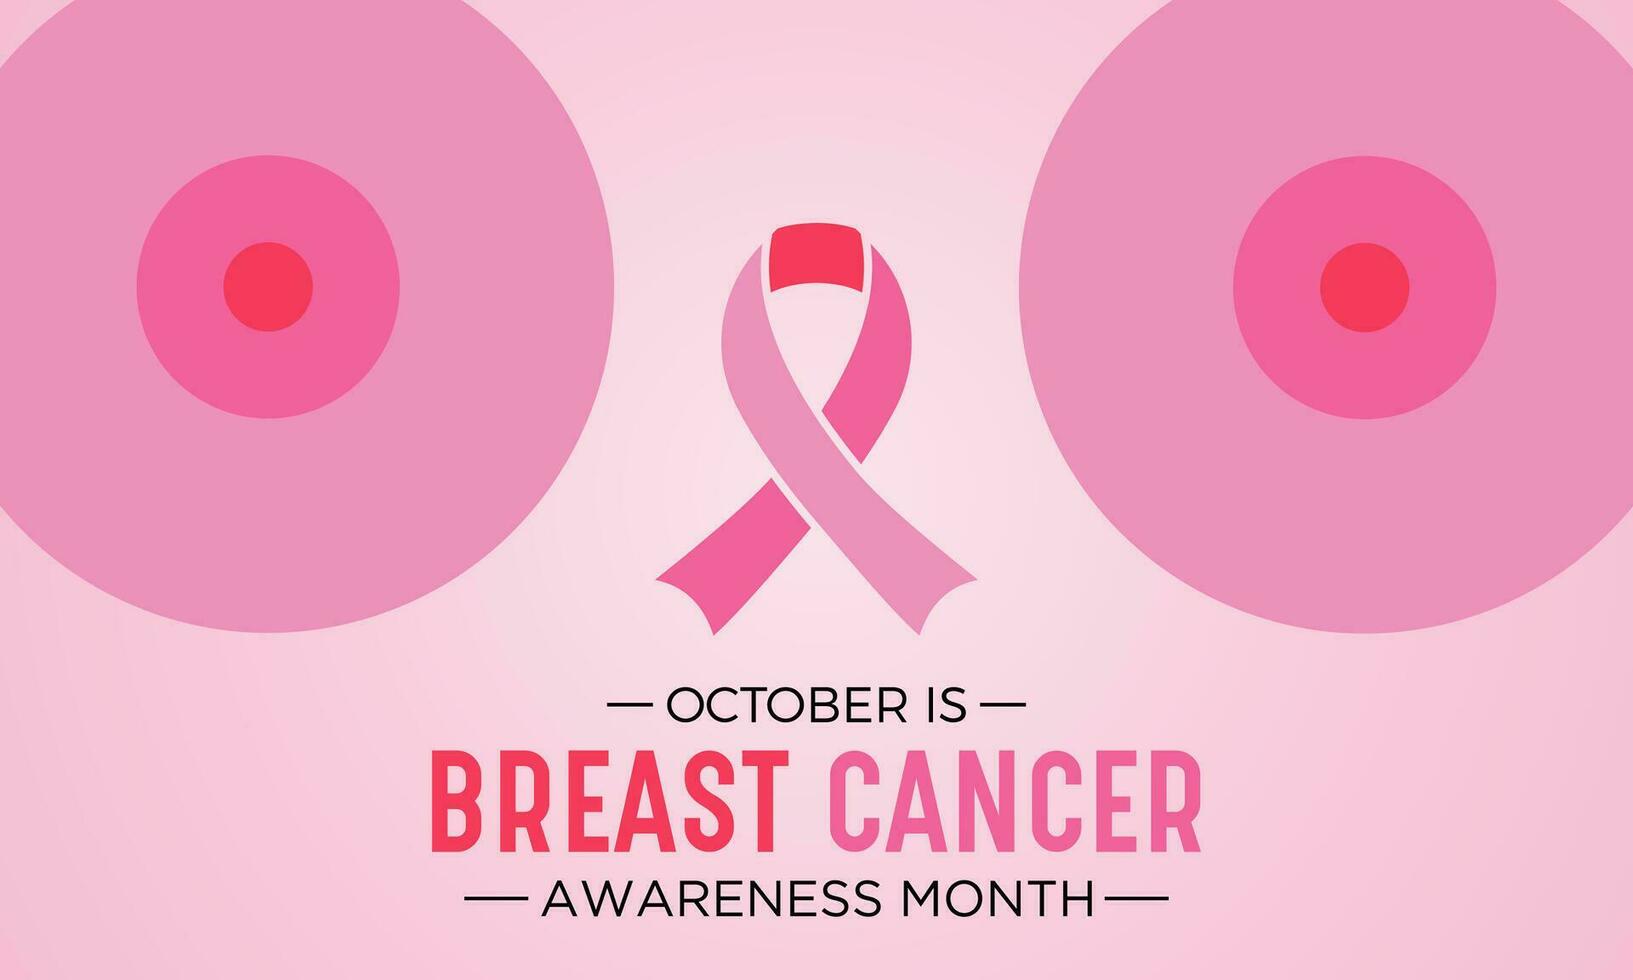 borst kanker bewustzijn maand is opgemerkt elke jaar in oktober. borst kanker bewustzijn maand schoonschrift banier ontwerp Aan roze achtergrond. vector illustratie.